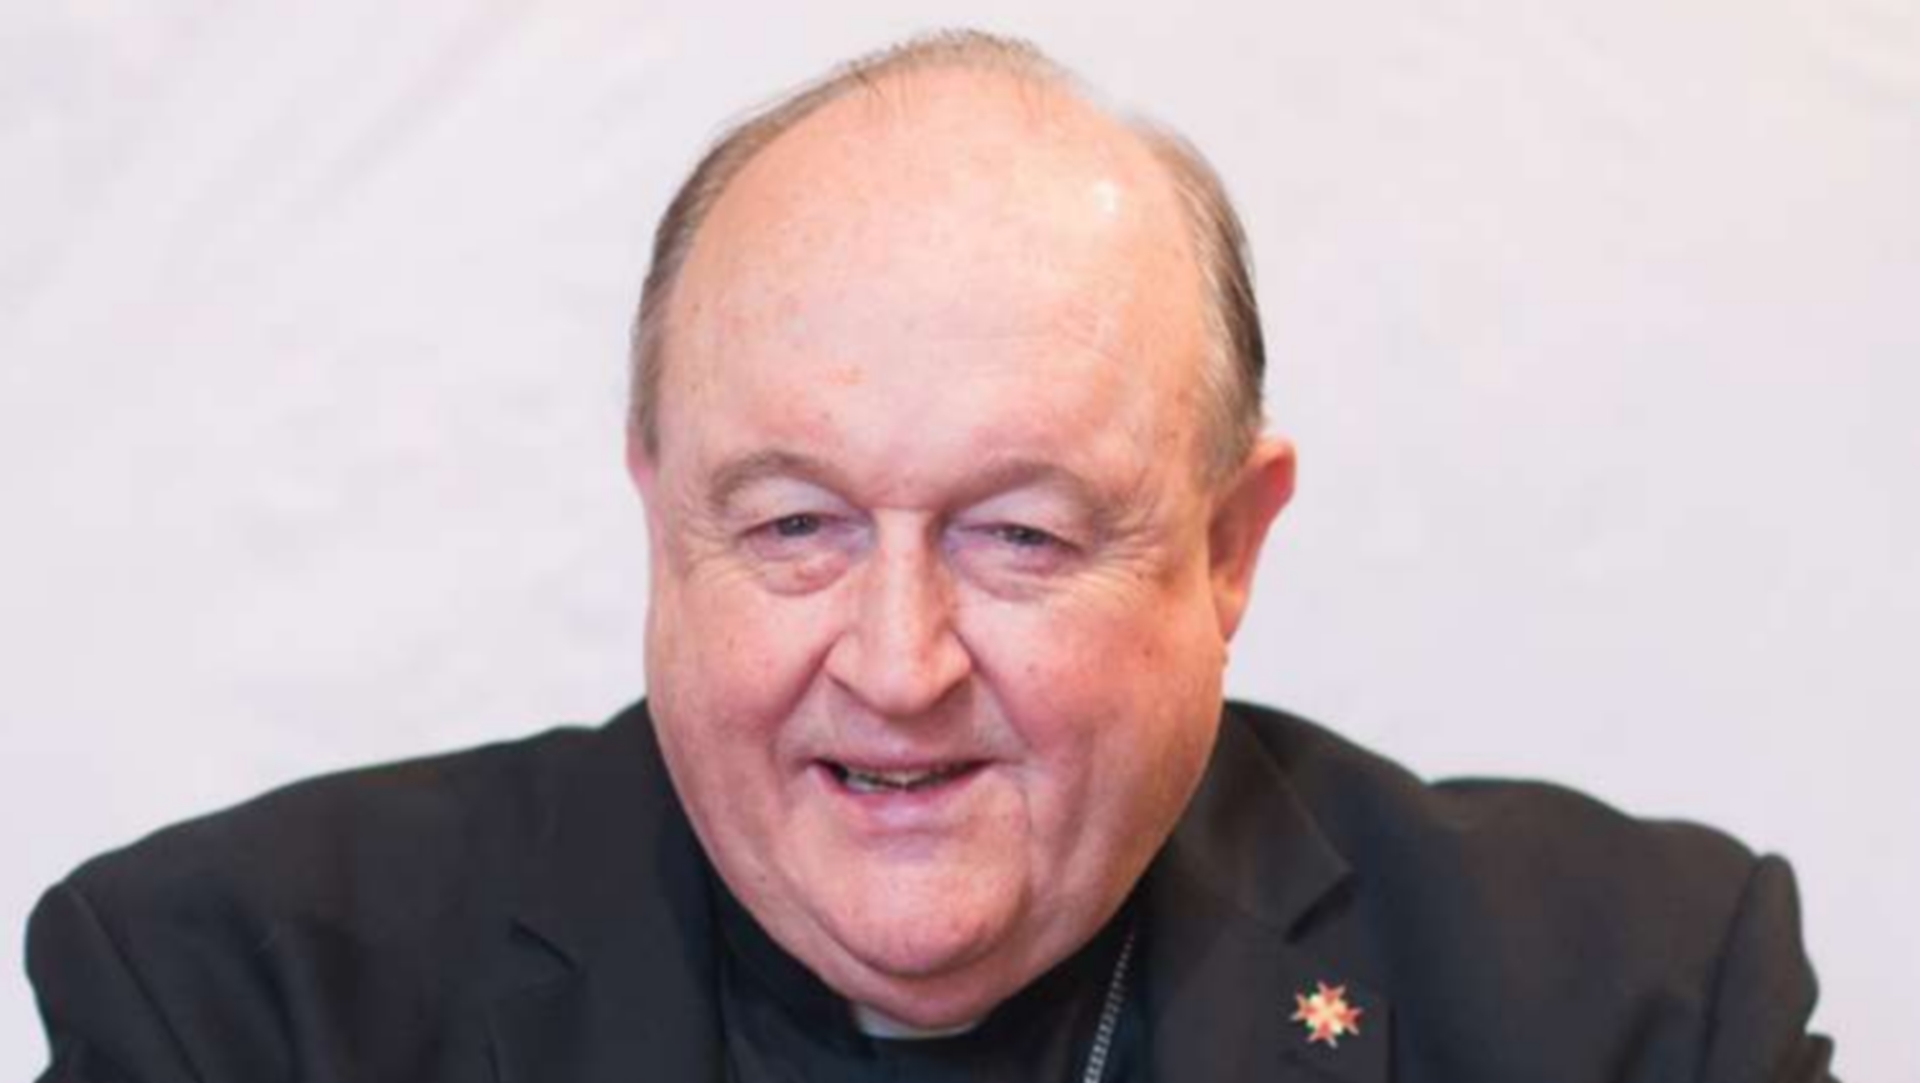 Mgr Philipp Wison, archevêque d'Adelaïde, en Australie, a été libéré de l'accusation de non-dénonciation d'abus sexuels | archidiocèse d'Adelaïde